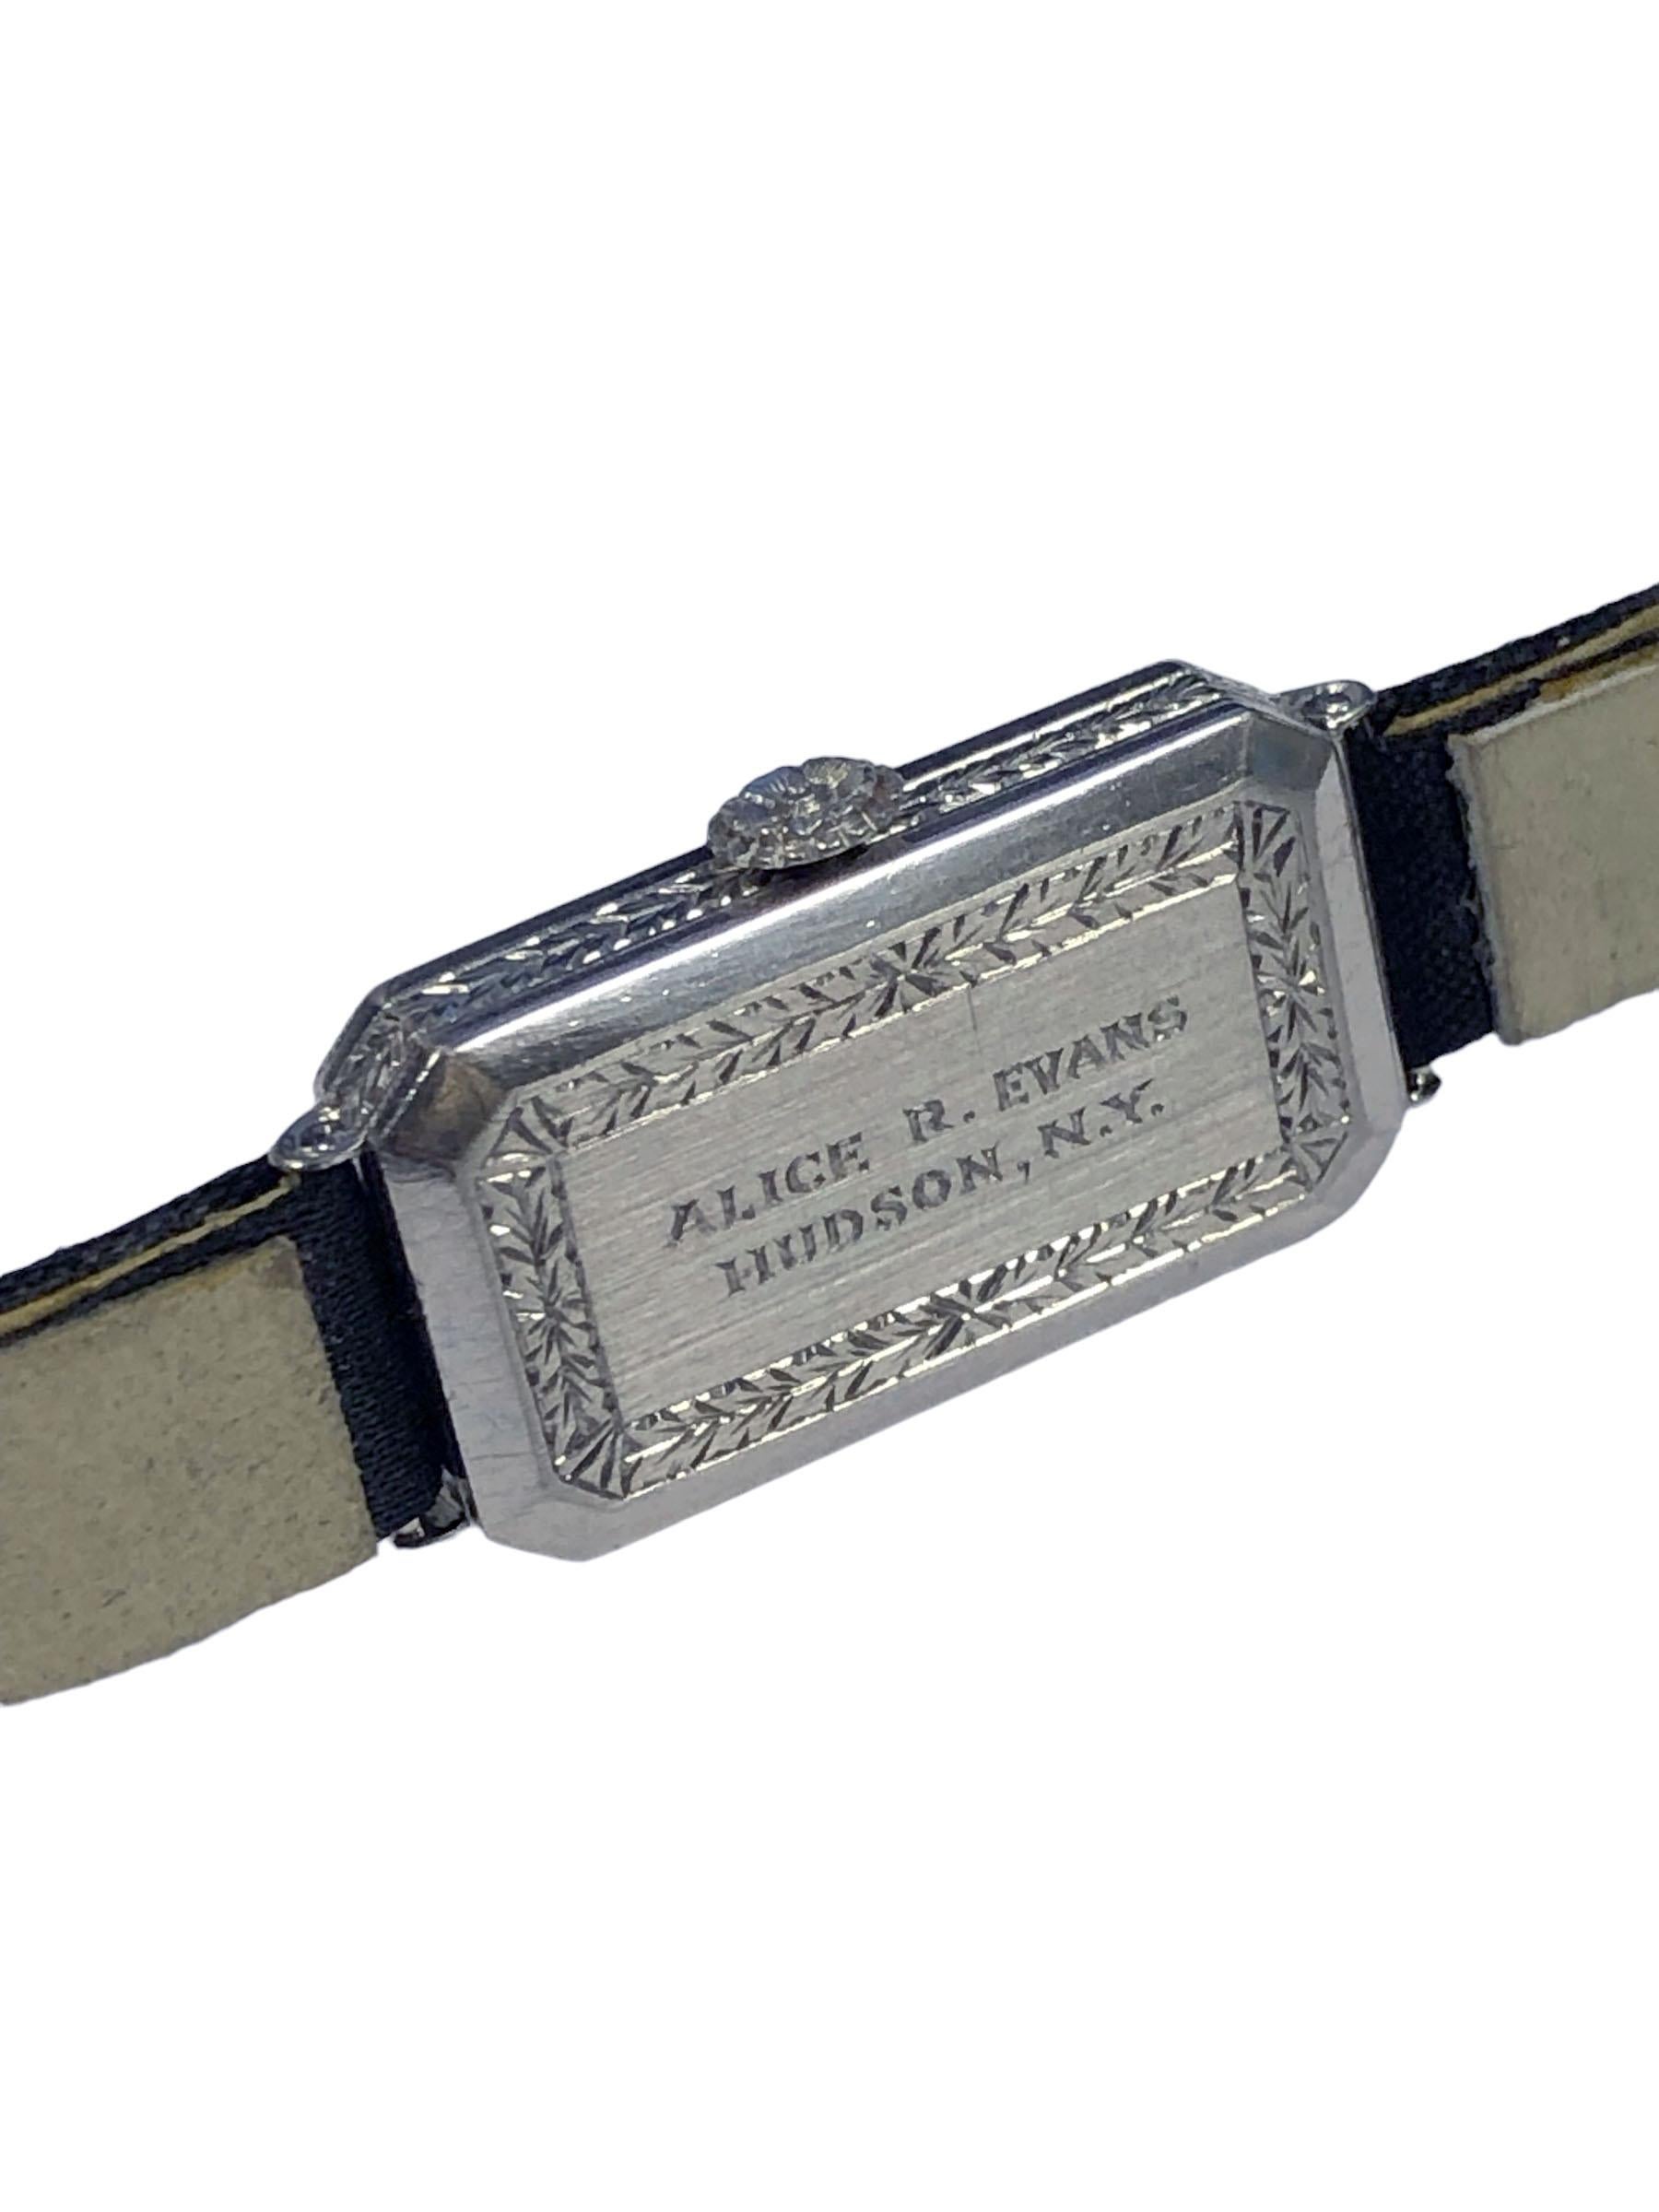 Montre-bracelet pour dame Patek Philippe for Tiffany & Company, 26 X 9 M.M. Boîtier en platine 2 pièces serti de diamants de taille européenne totalisant 1 carat, les côtés et le dos du boîtier sont décorés de motifs gravés à la main, couronne